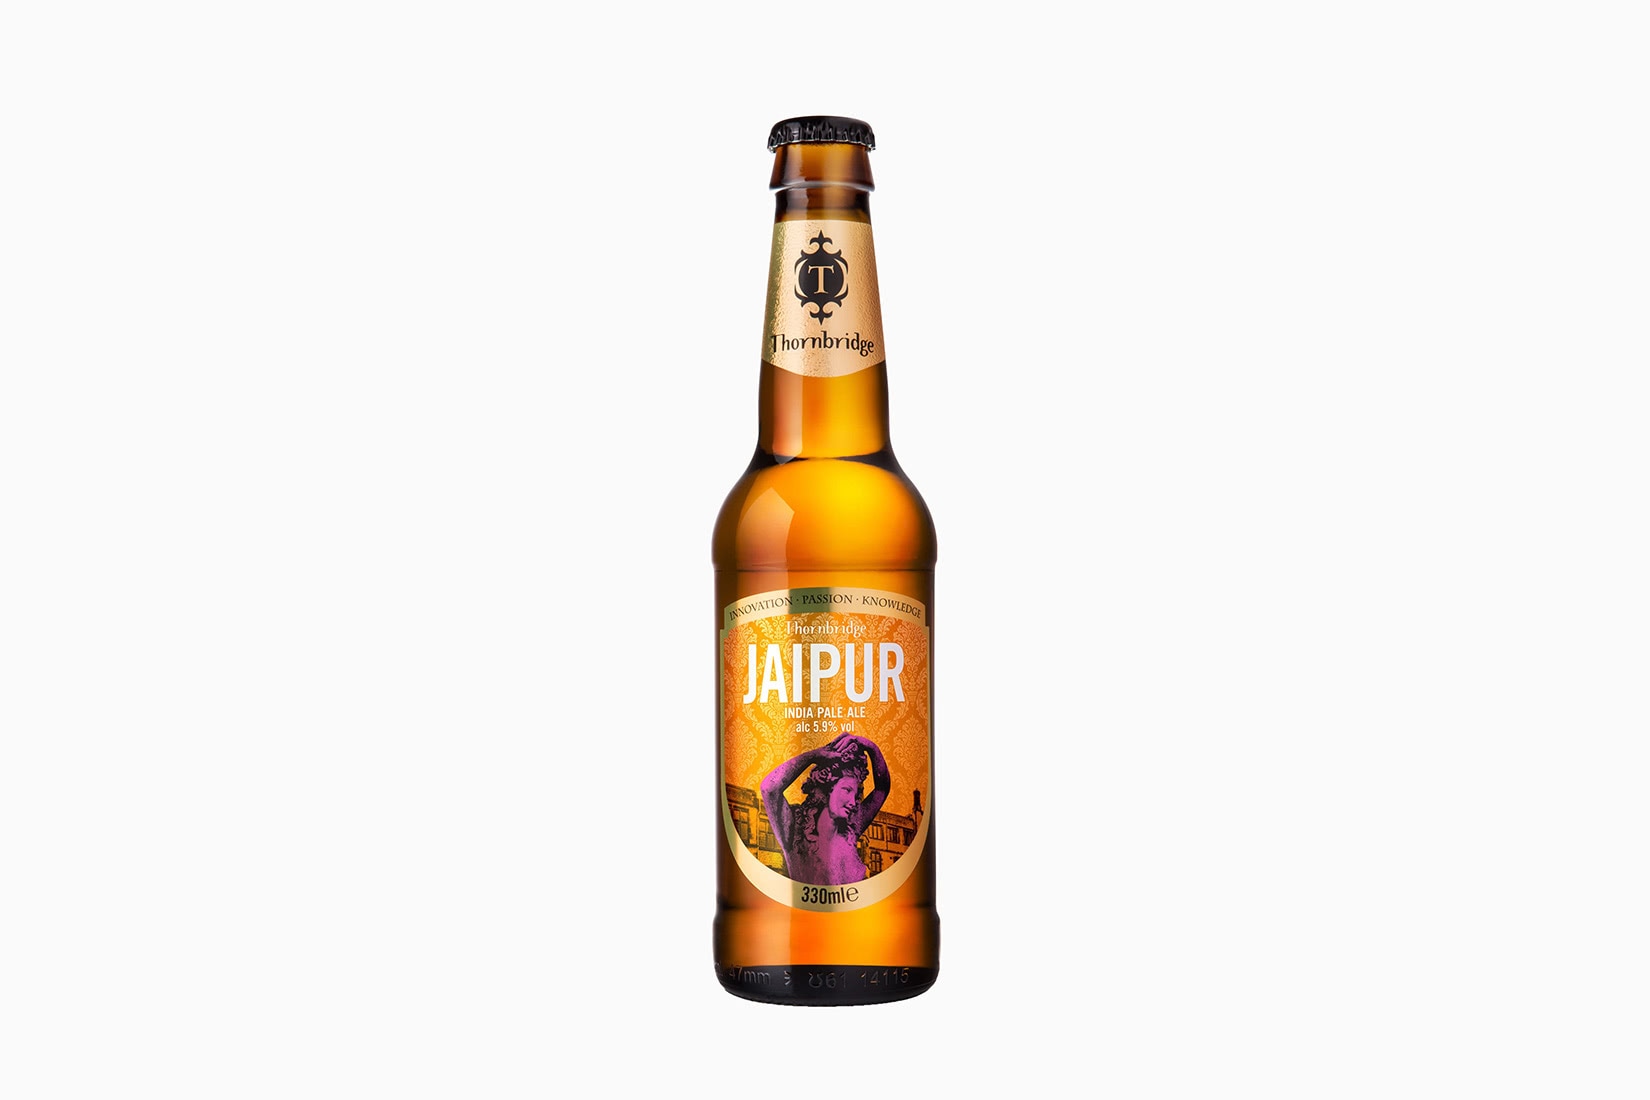 meilleures marques de bière thornbridge jaipur IPA - Luxe Digital